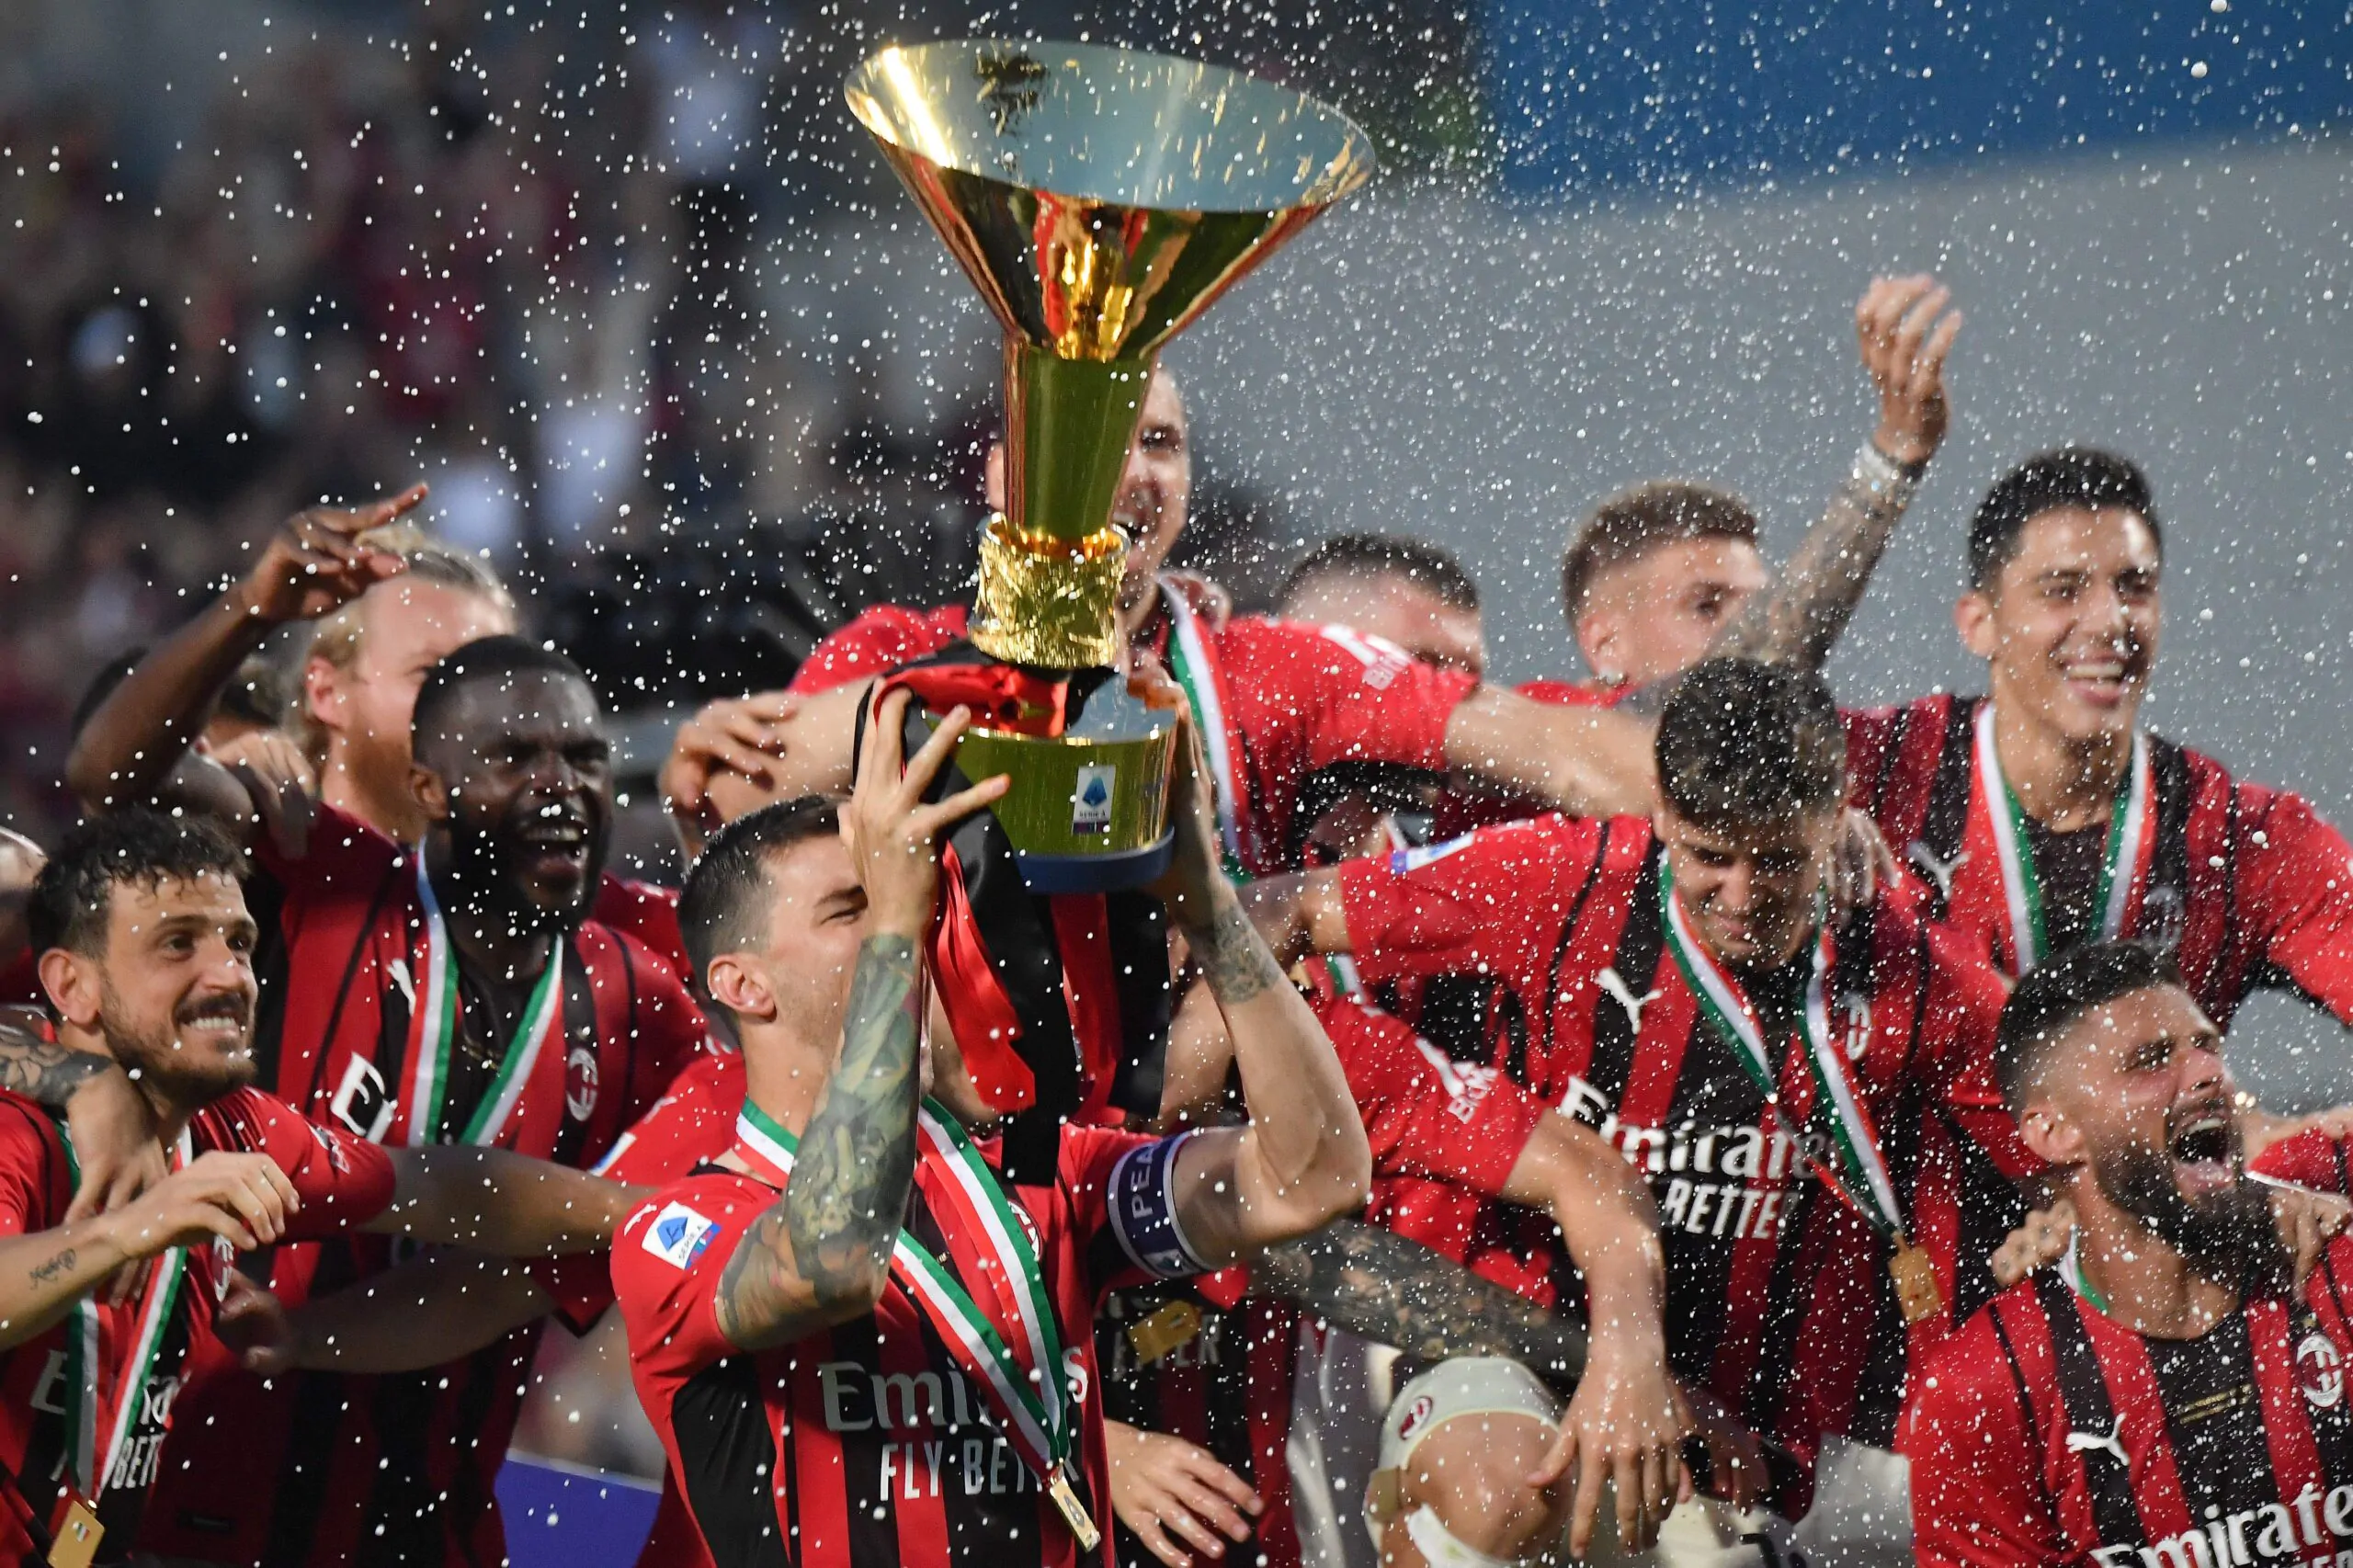 L’ex allenatore sicuro sul Milan: “Hanno vinto per un motivo preciso”